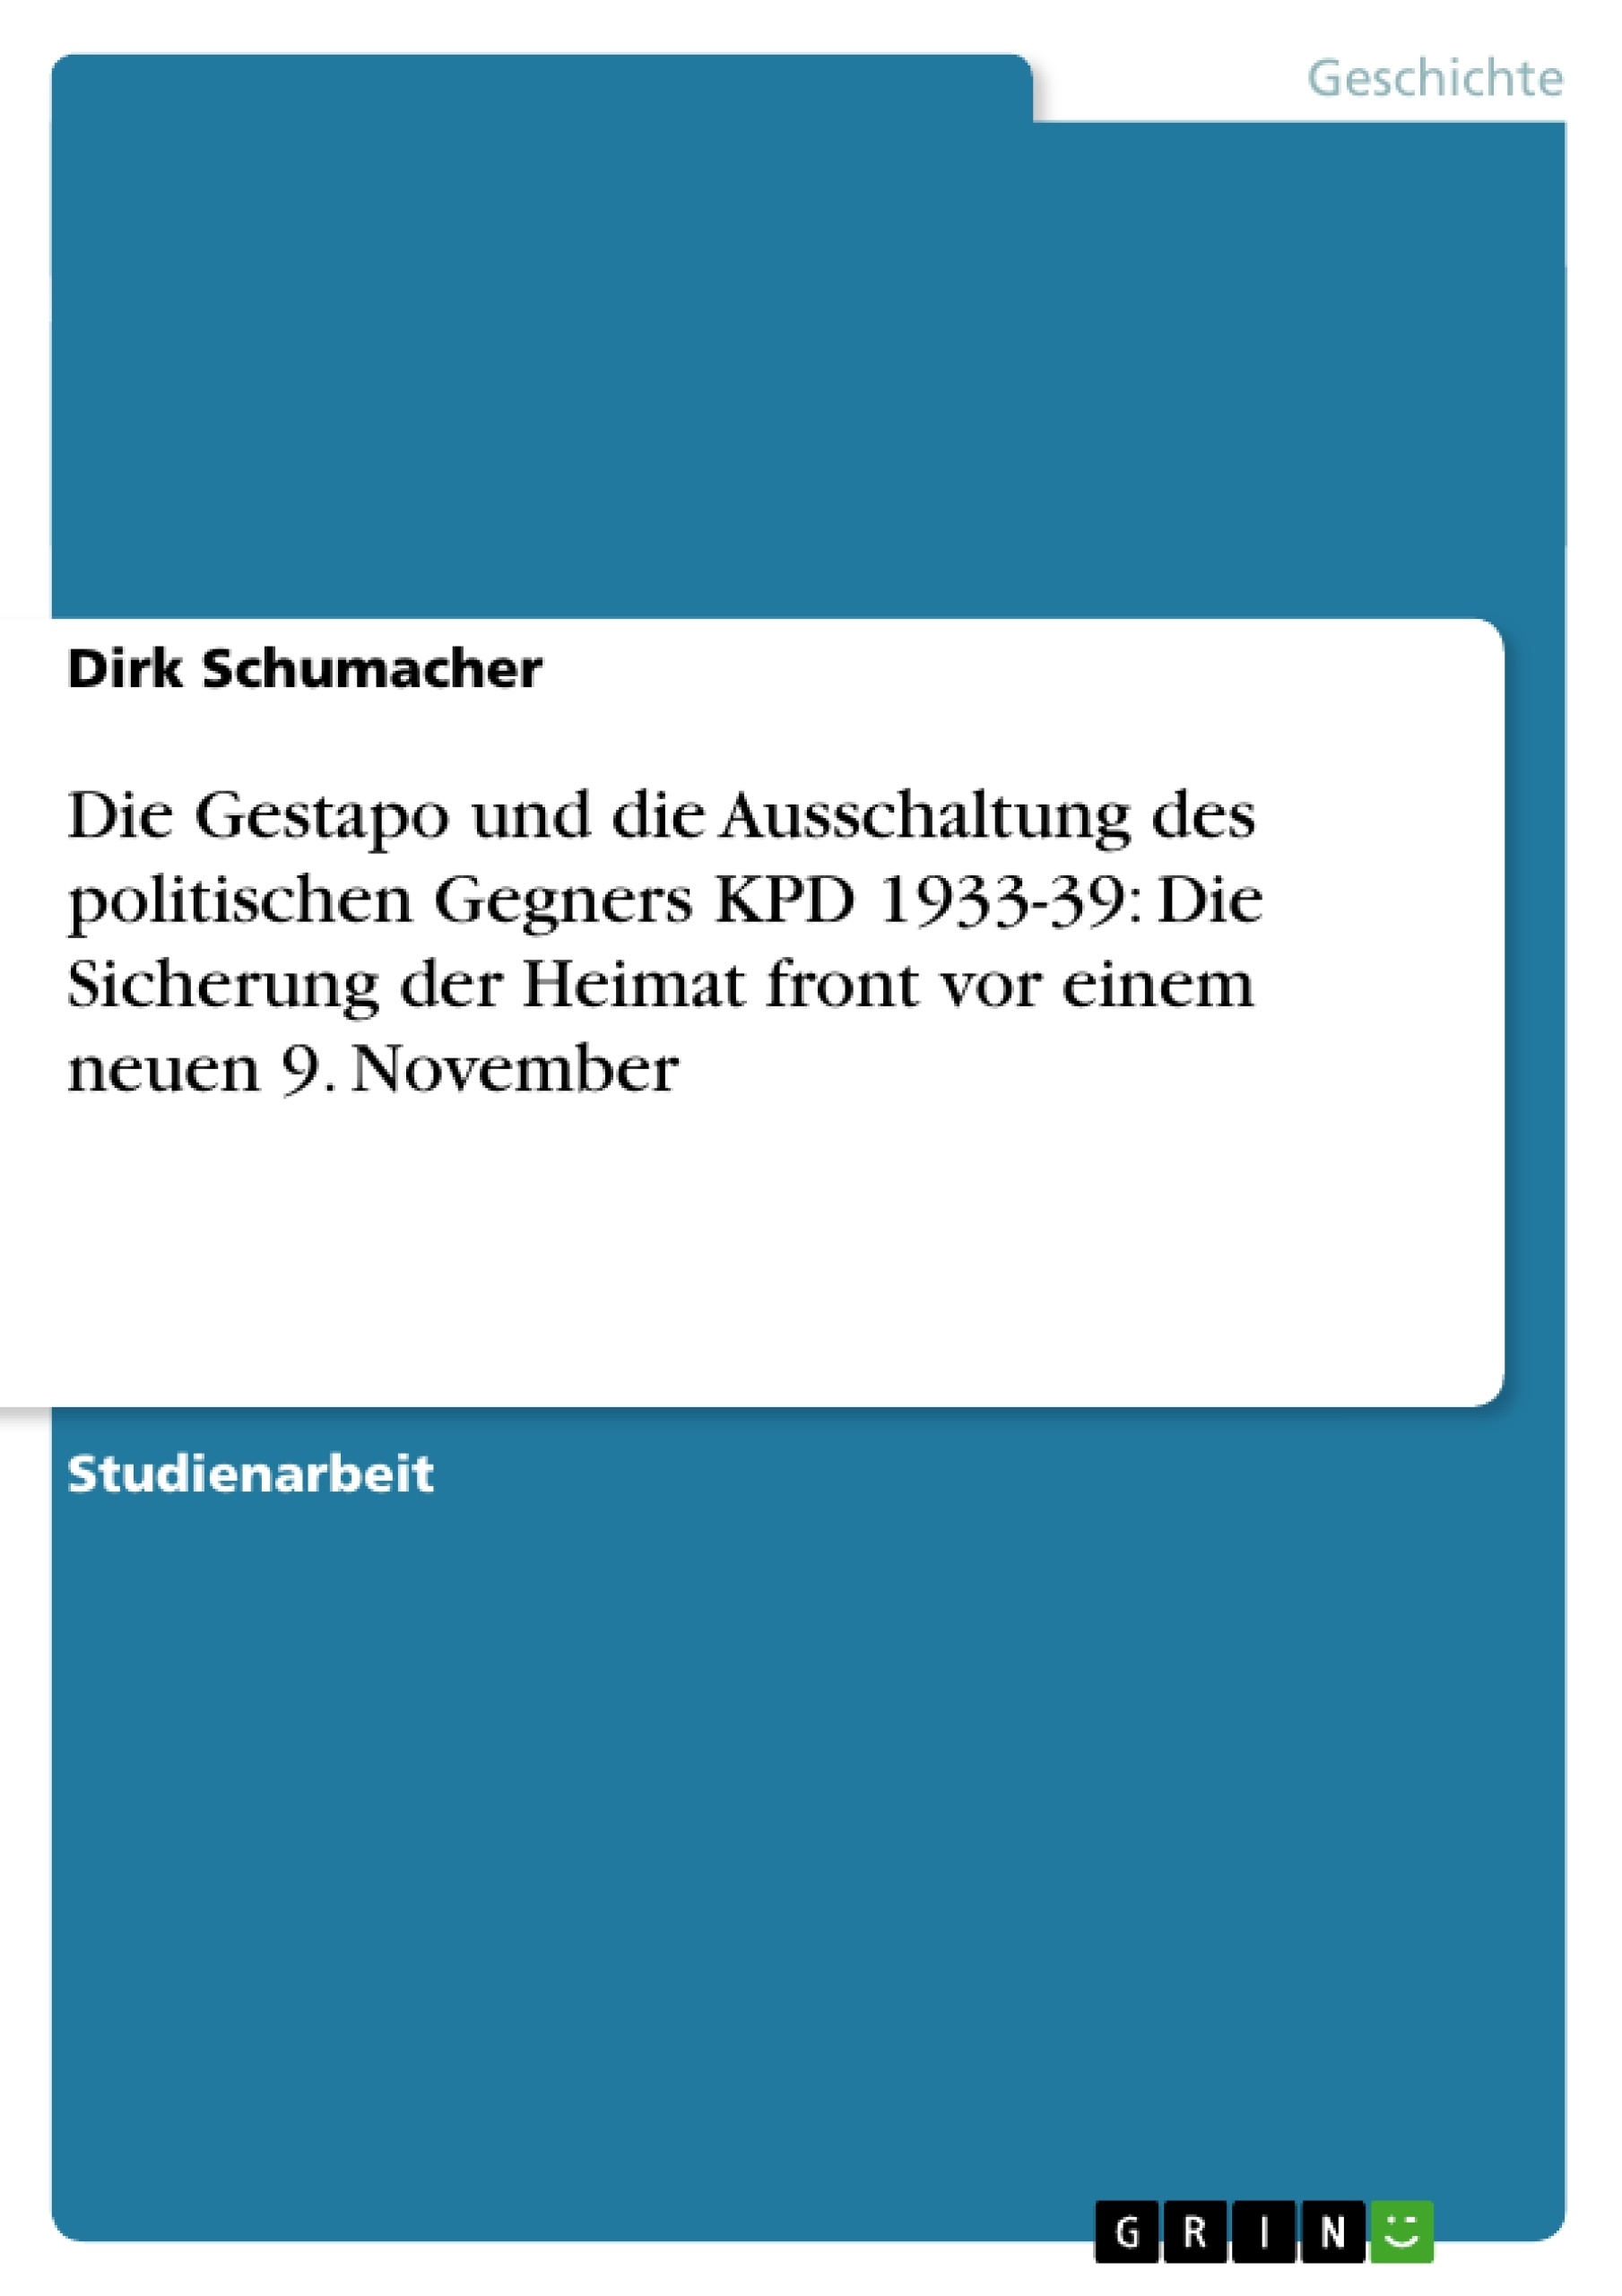 Title: Die Gestapo und die Ausschaltung des politischen Gegners KPD 1933-39: Die Sicherung der Heimat front vor einem neuen 9. November